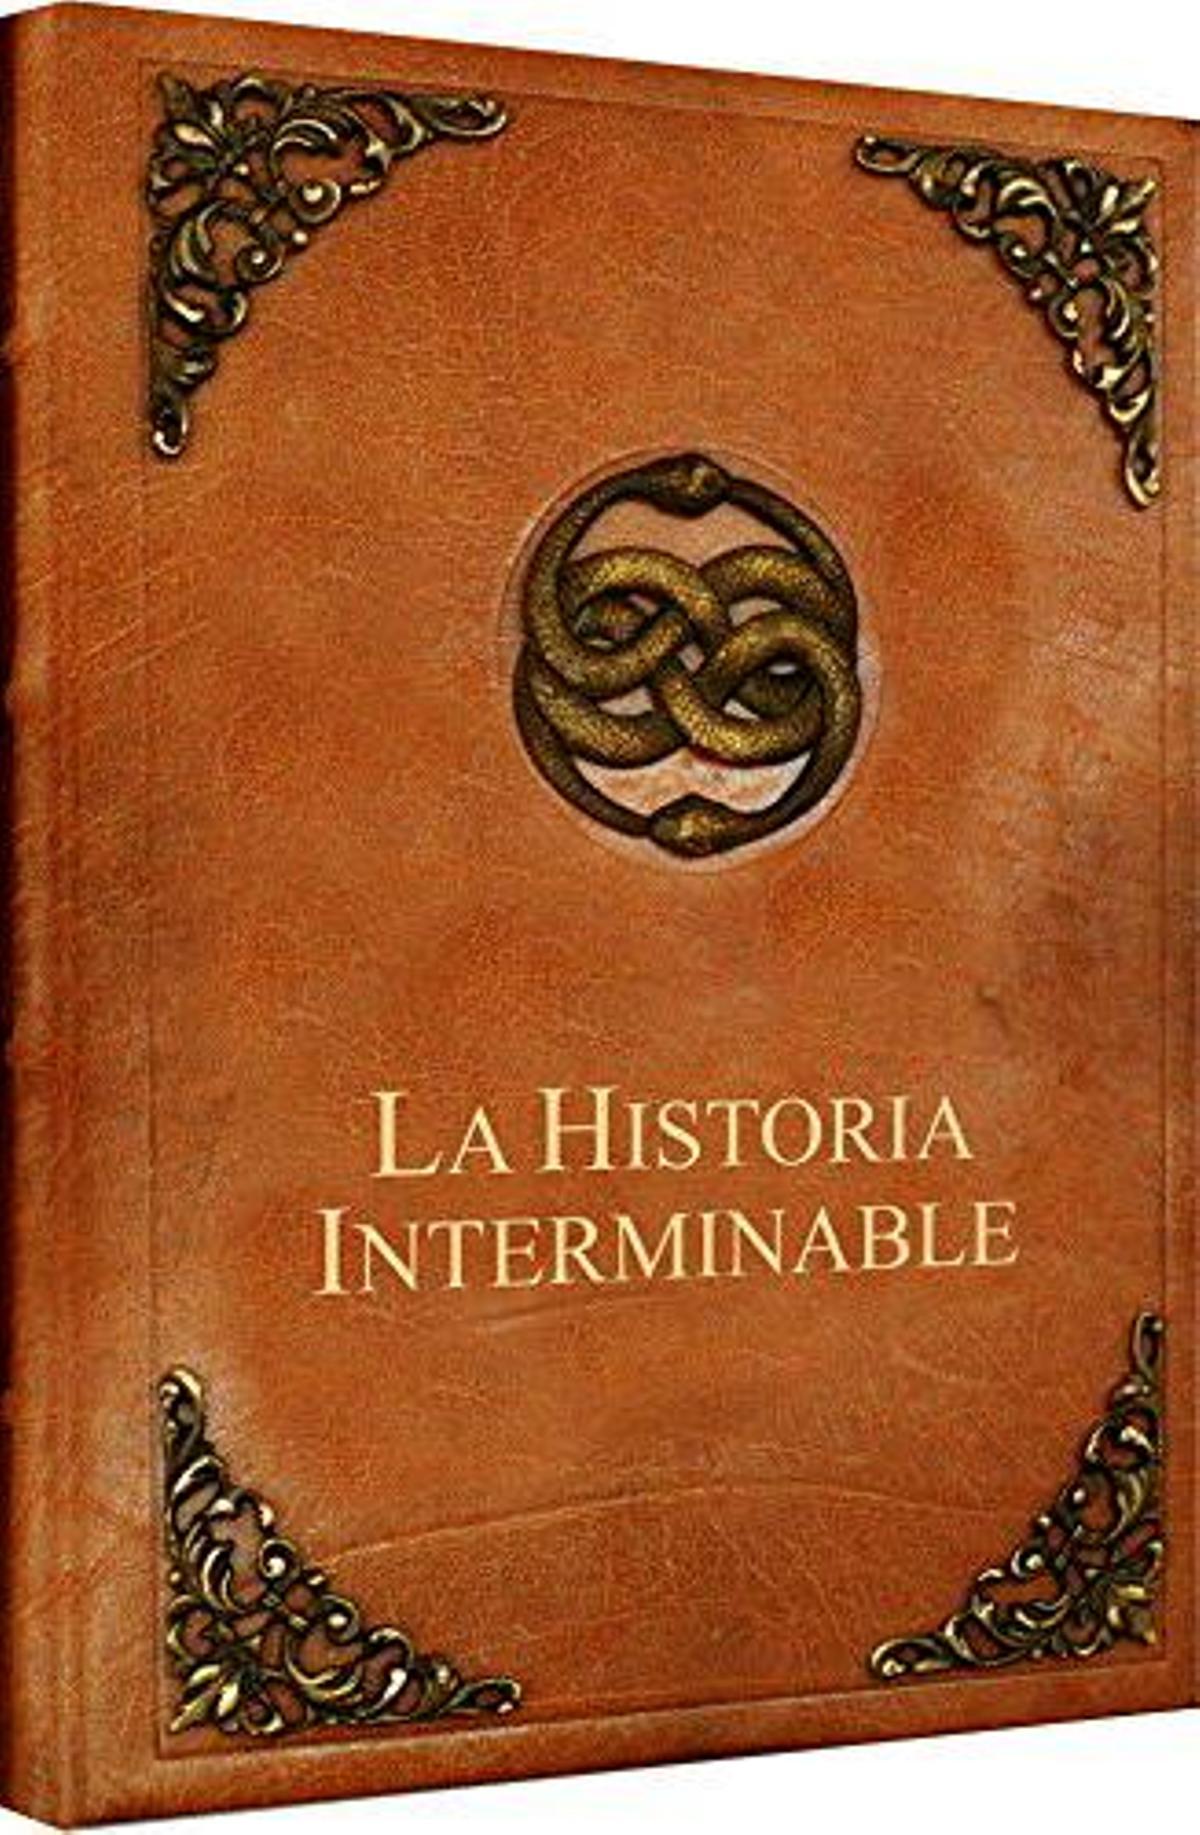 La Historia Interminable, mucho más que un libro - Fantasía celta